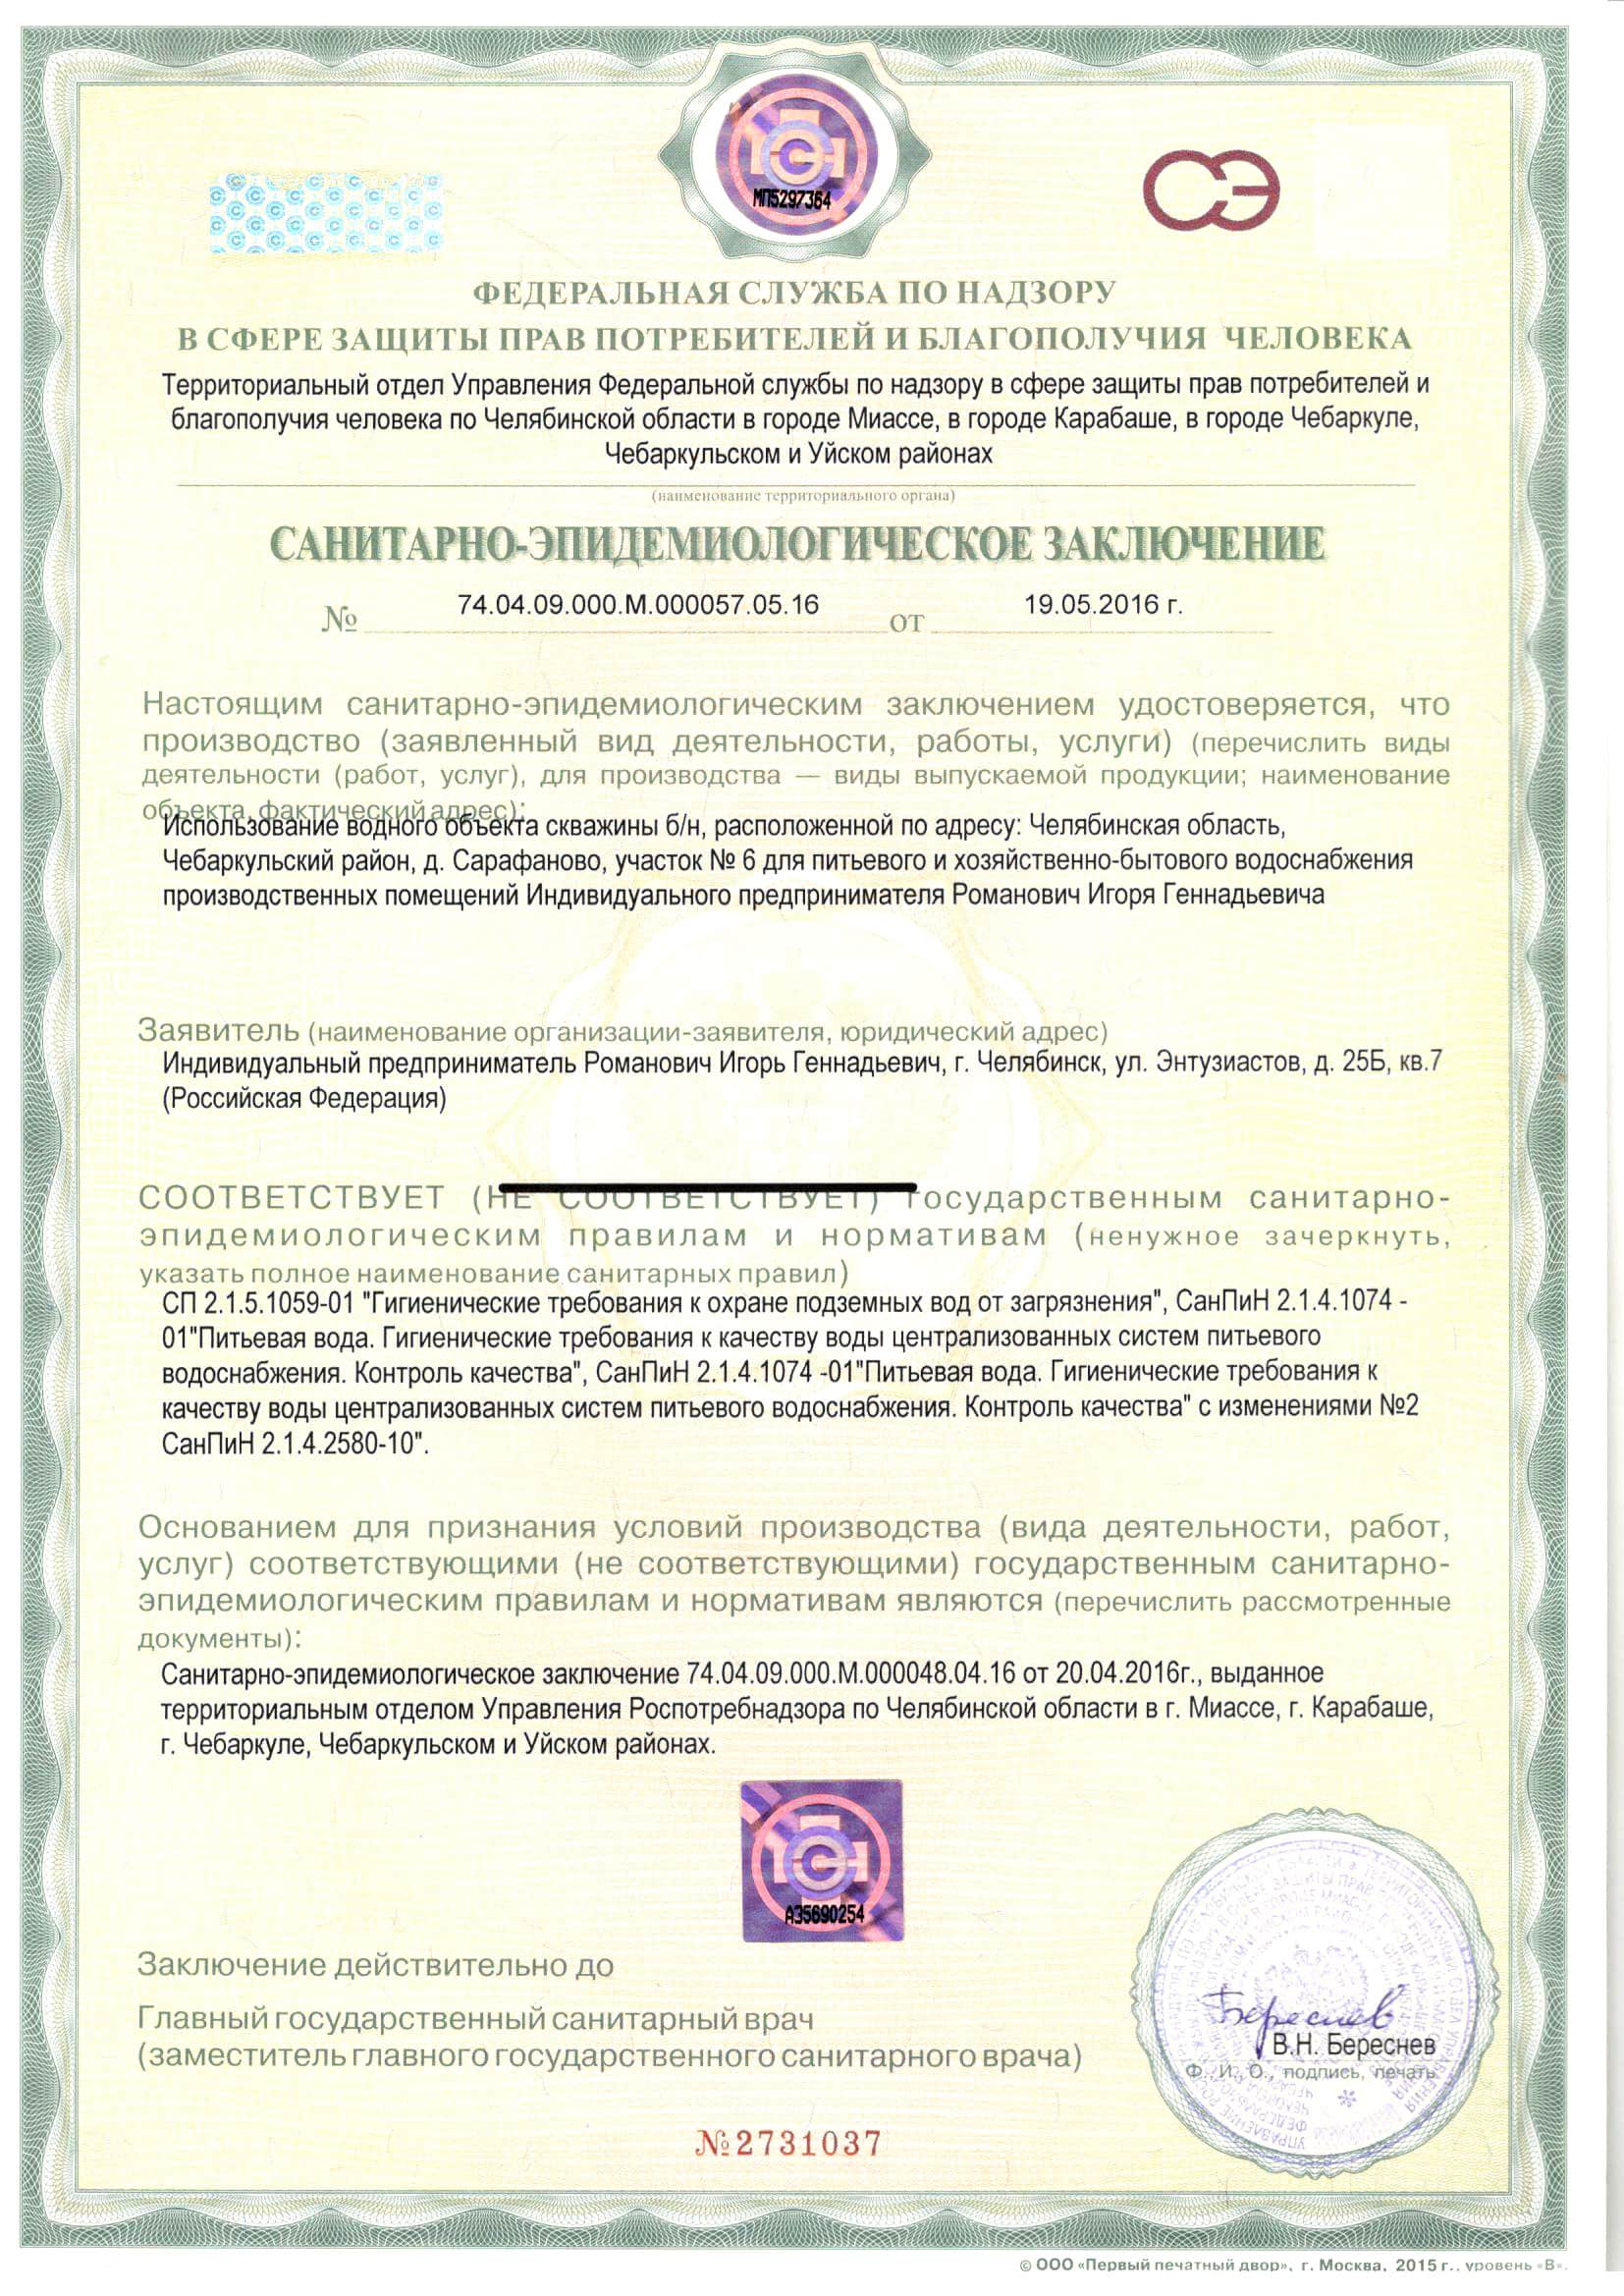 Сертификат соответствия проб воды санитарным нормам